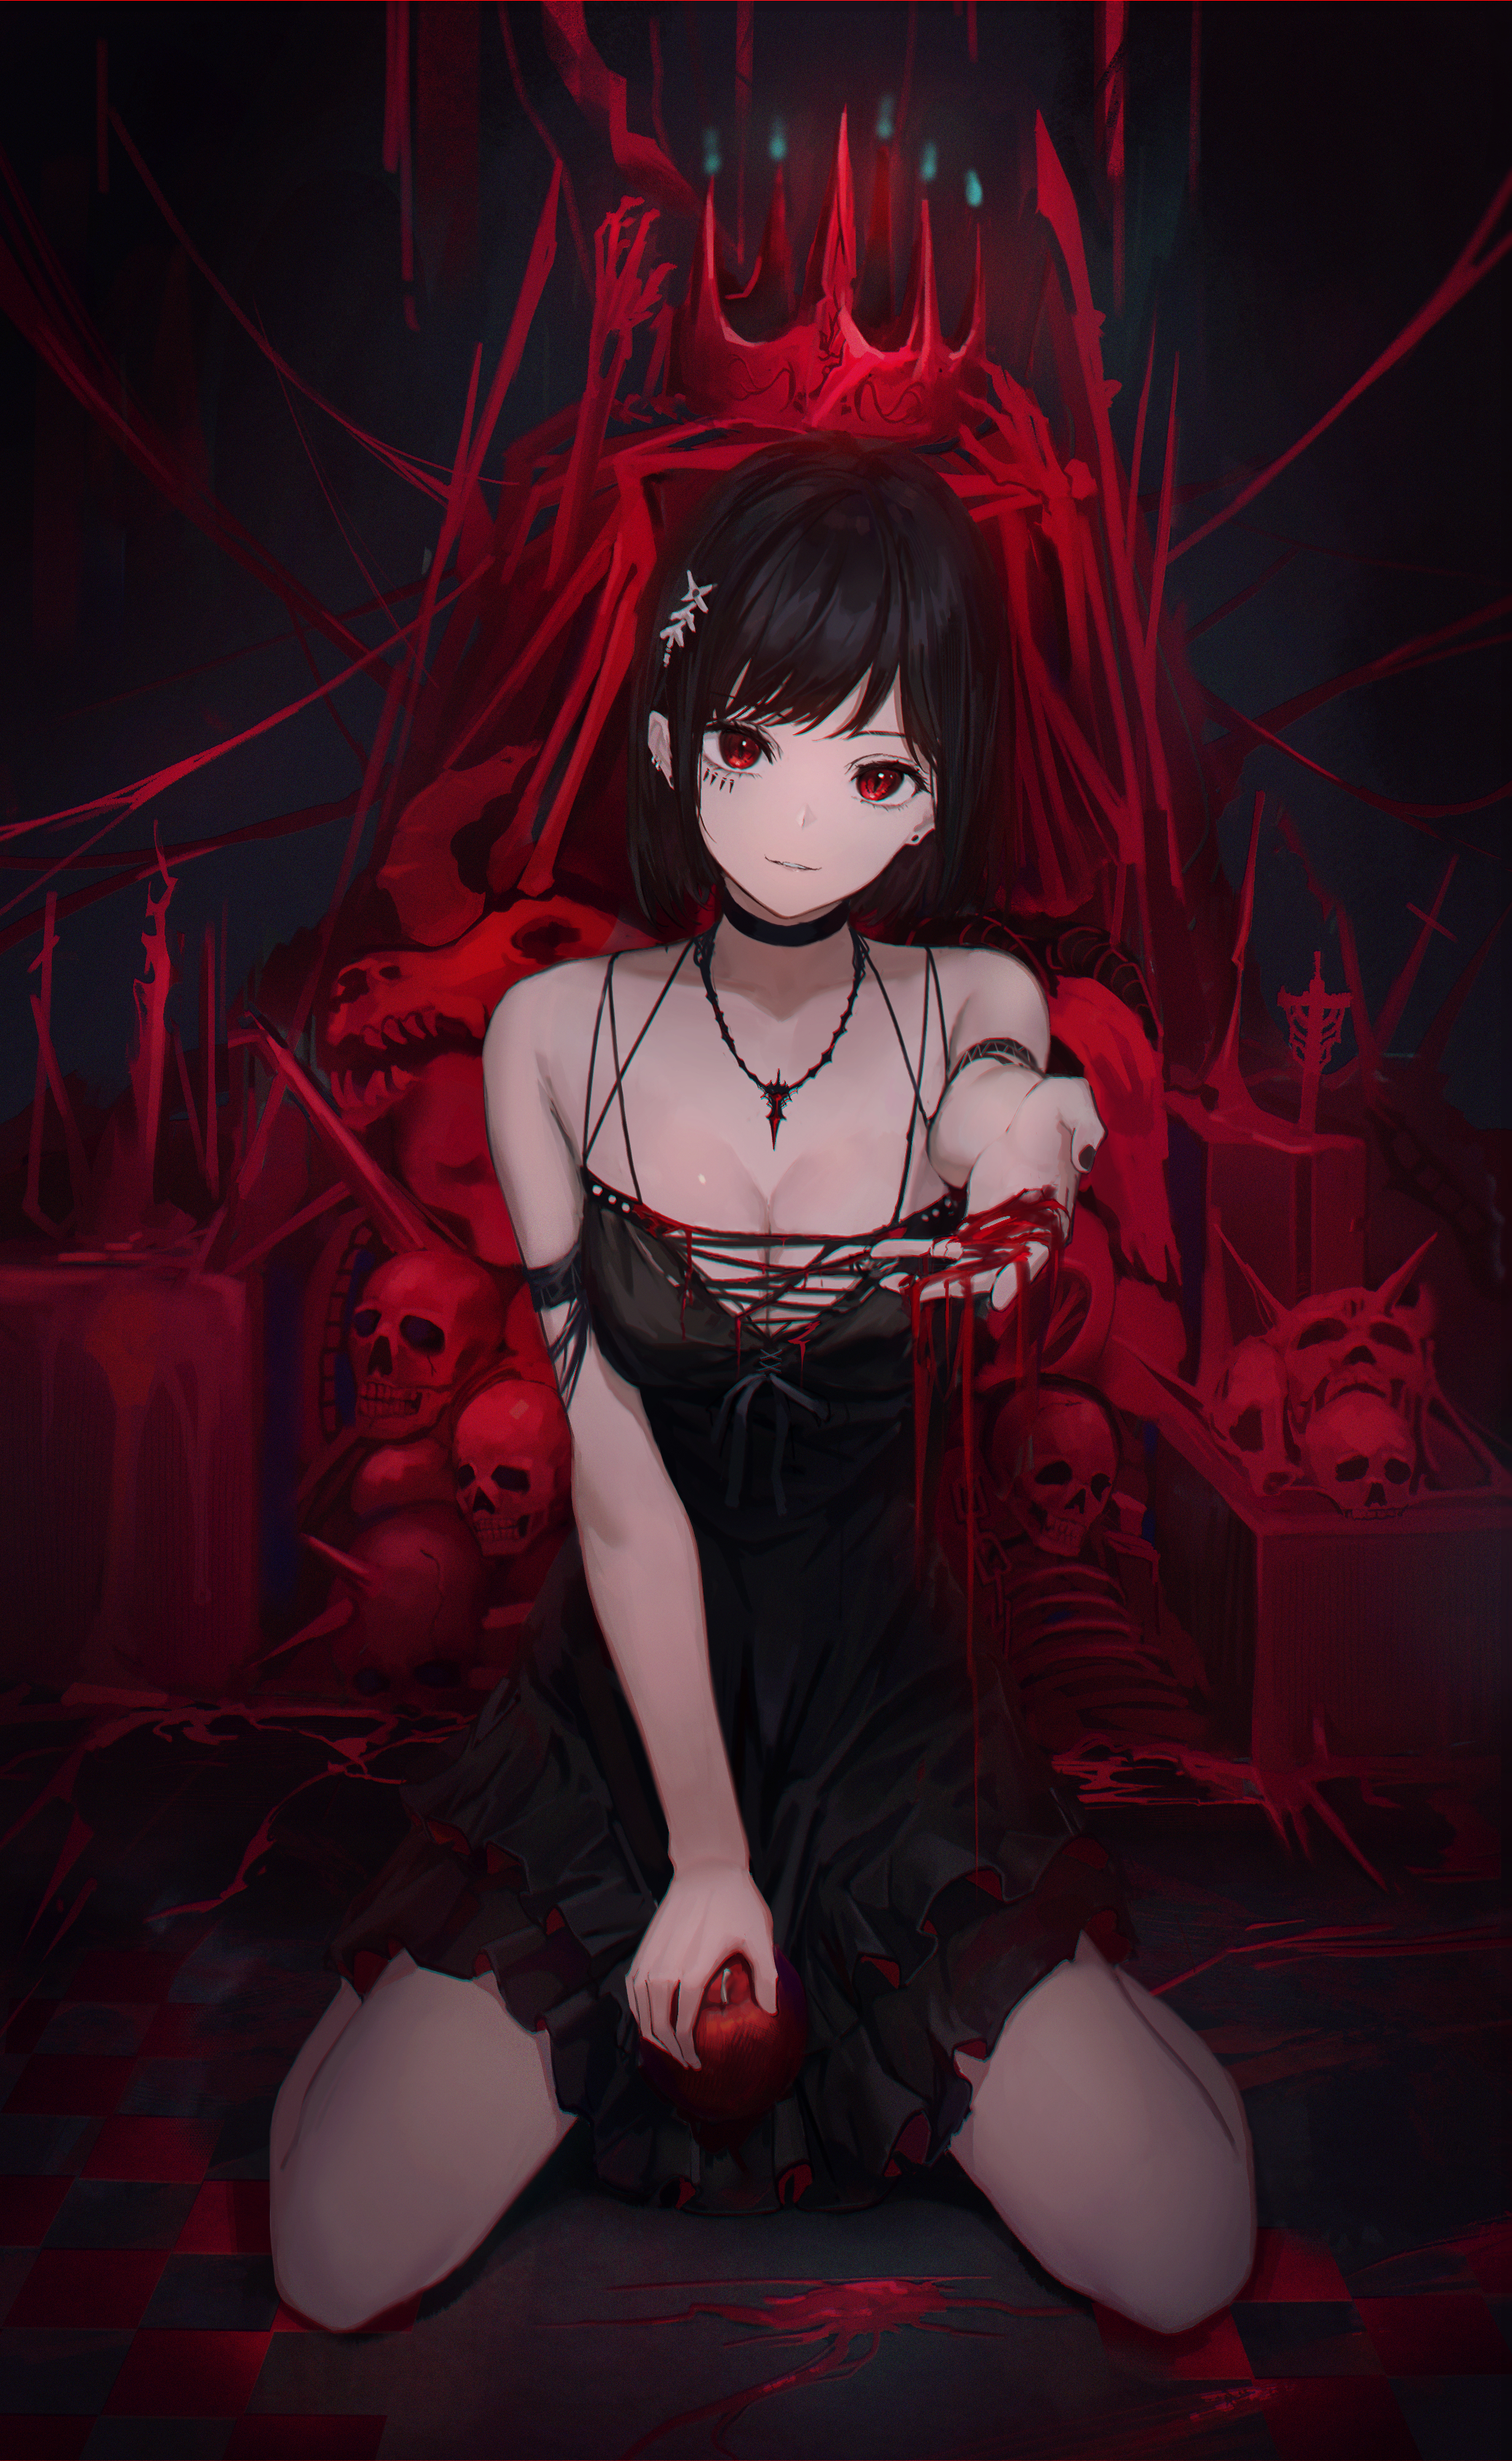 Anime Anime Girls Ritta Artwork Short Hair Black Hair Red Eyes Dress Black Dress Bones 2078x3382